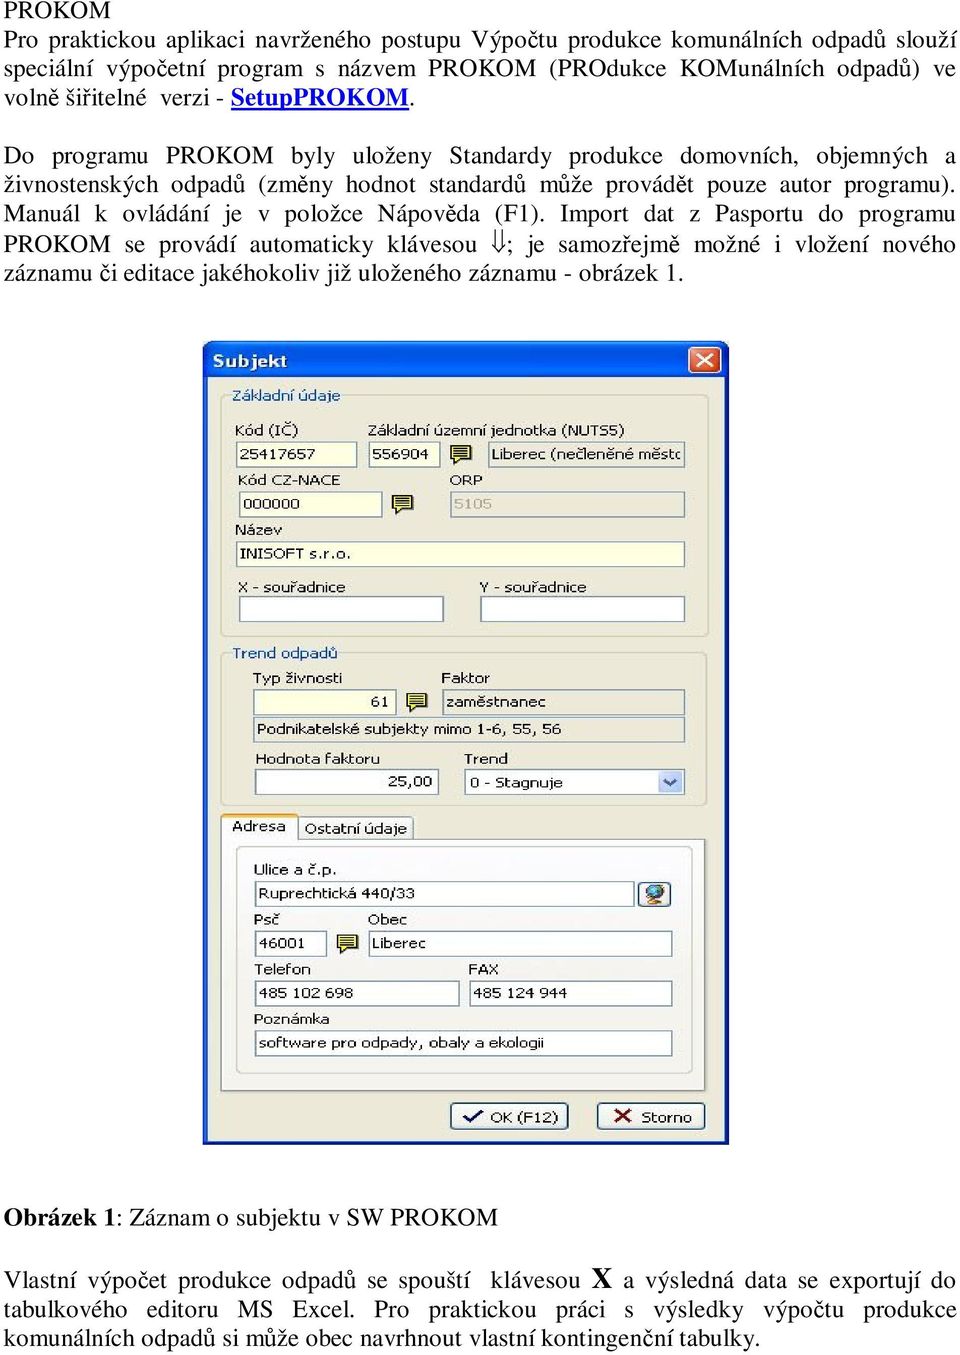 Import dat z Pasportu do programu PROKOM se provádí automaticky klávesou ; je samozejm možné i vložení nového záznamu i editace jakéhokoliv již uloženého záznamu - obrázek 1.